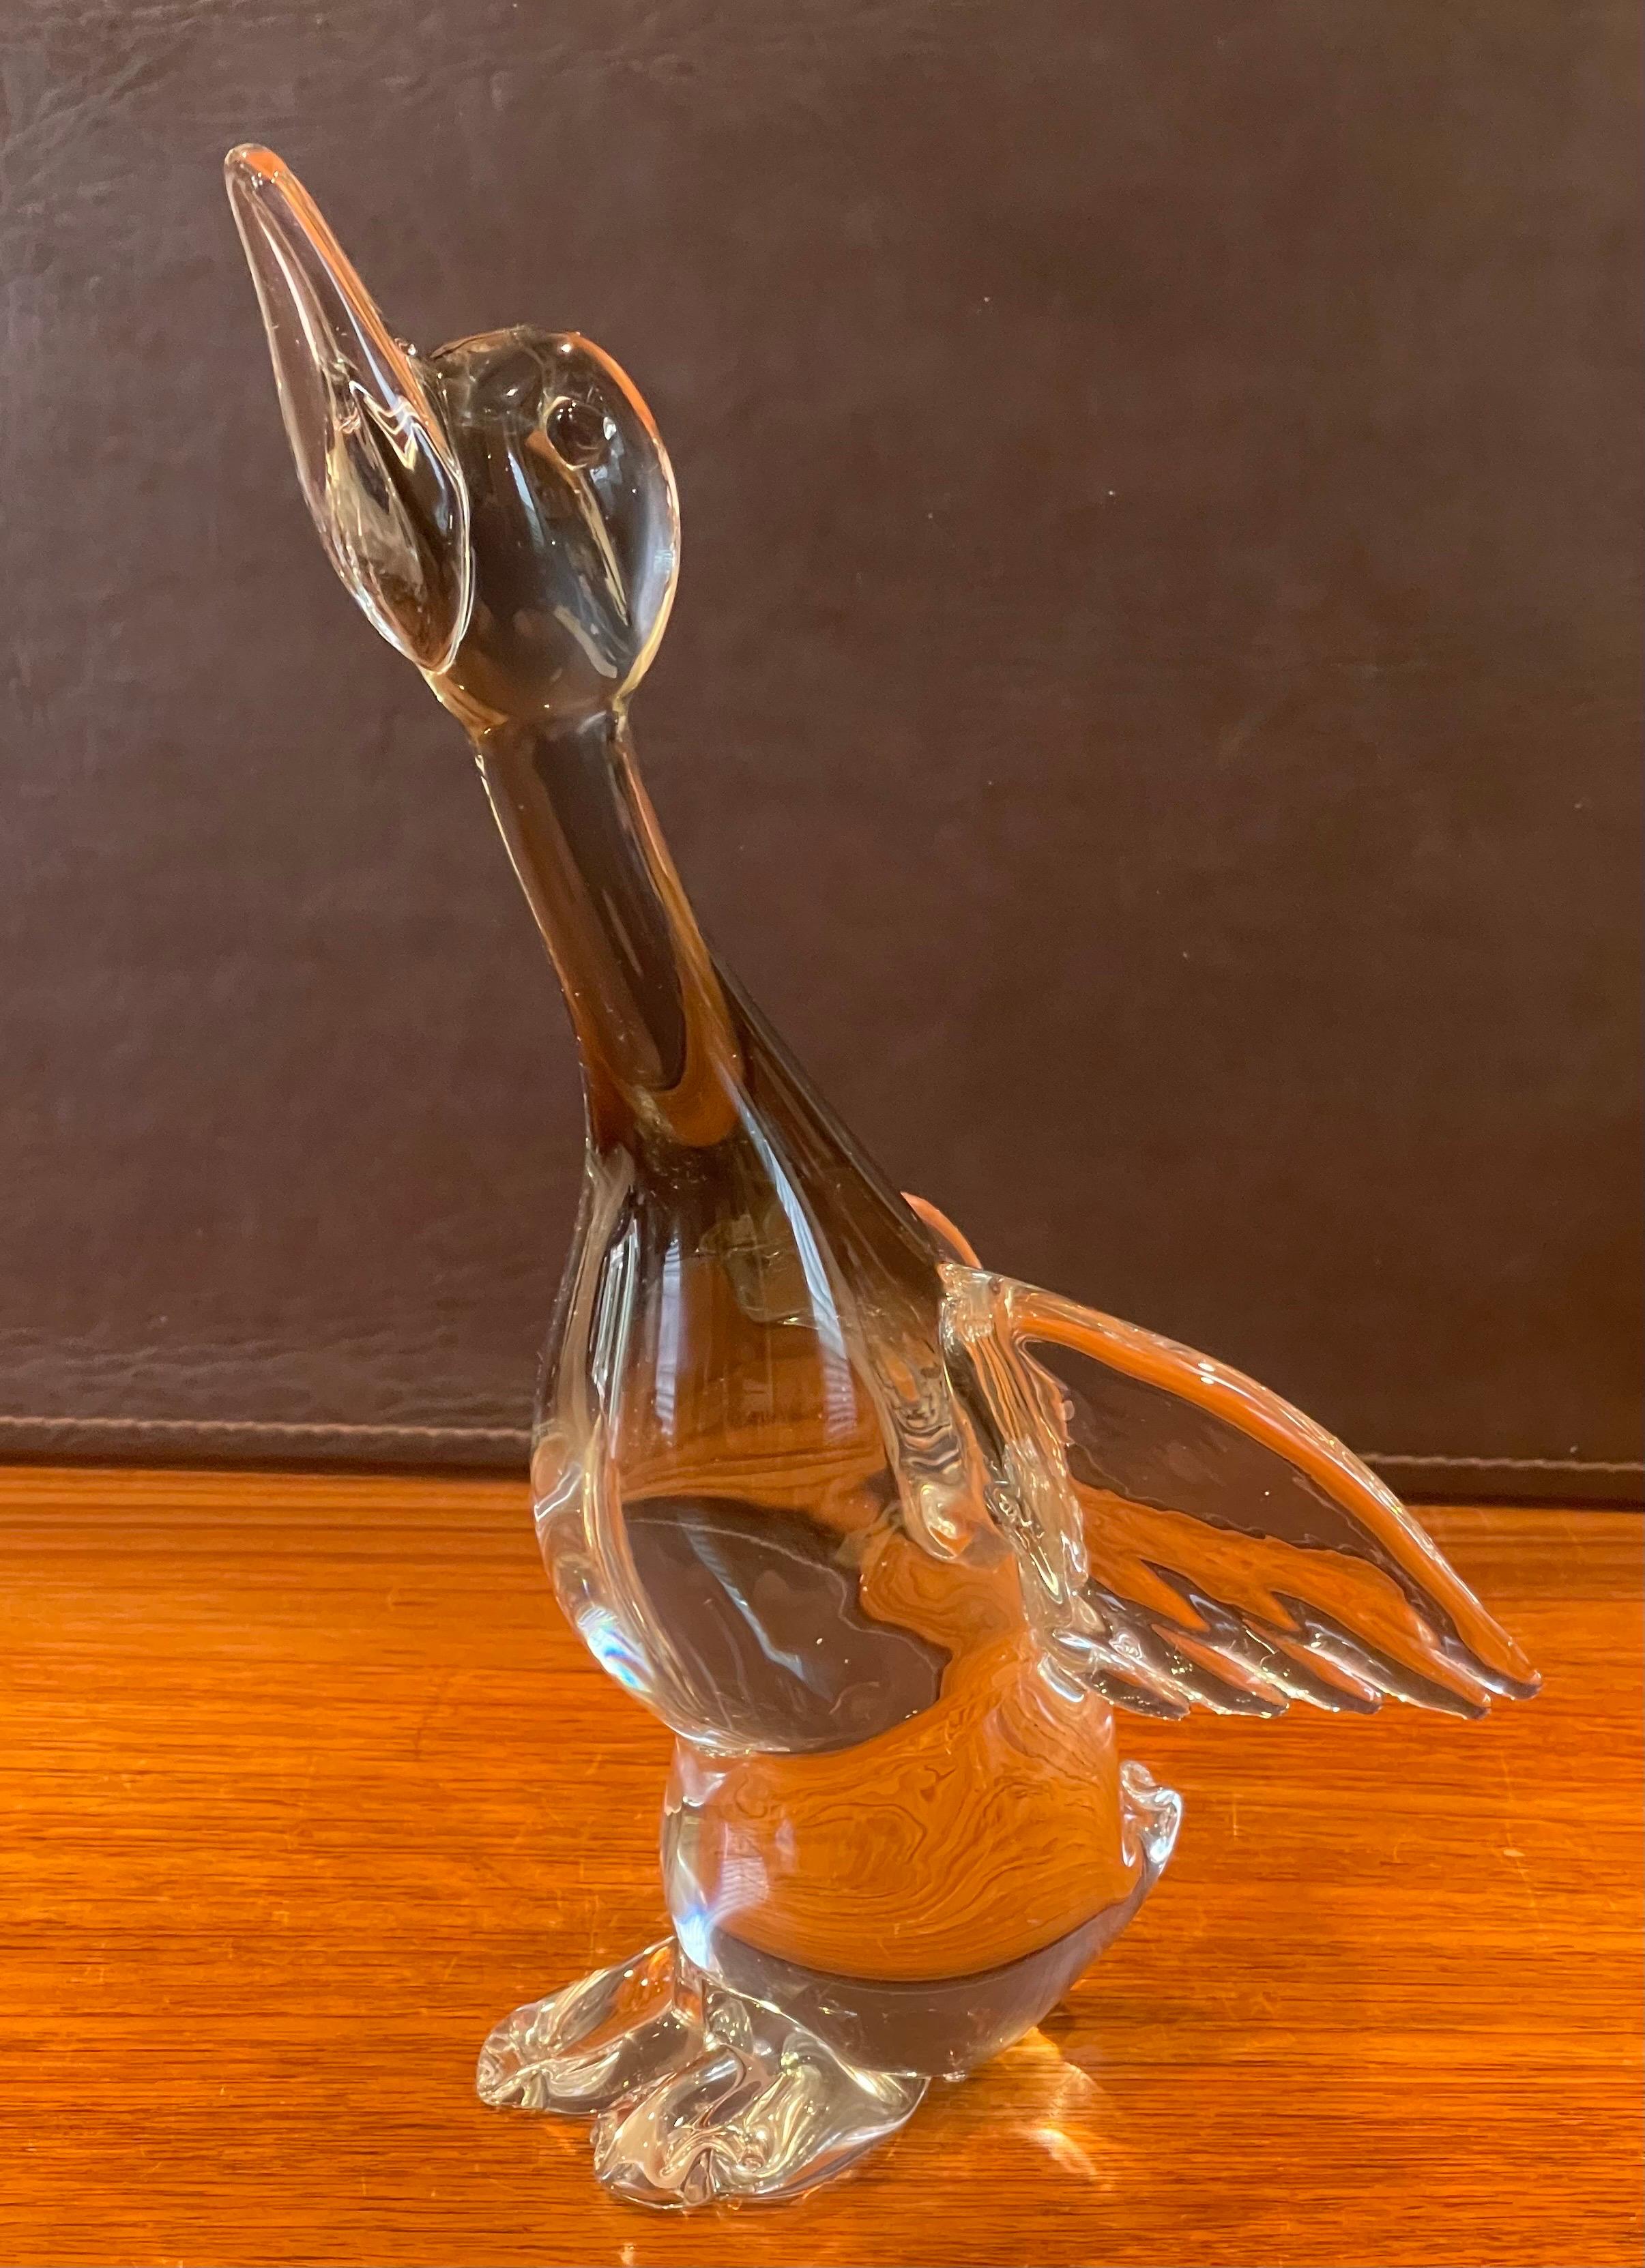 Majestic canard en vol, sculpture en verre d'art de Murano Glass, vers les années 1990. Cette magnifique pièce est en verre clair avec du sommerso noir dans le corps du canard ; une pièce vraiment cool et réaliste qui mesure 5.5 